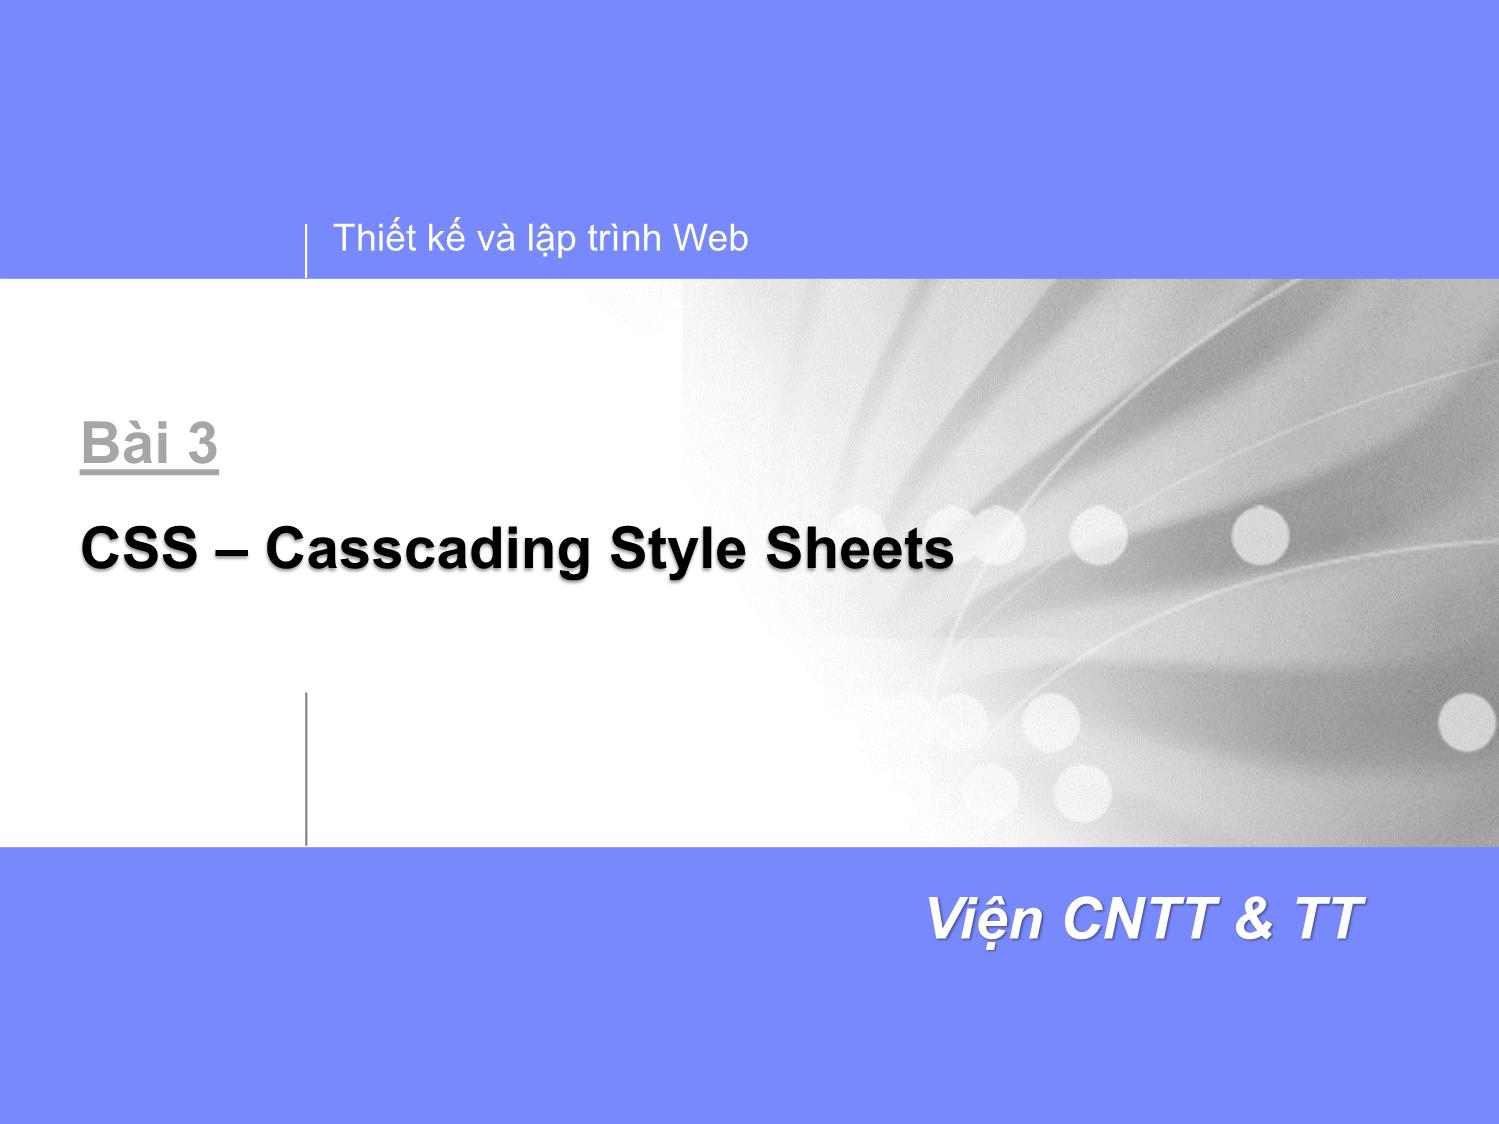 Bài giảng Thiết kế và lập trình Web - Bài 3: CSS trang 1